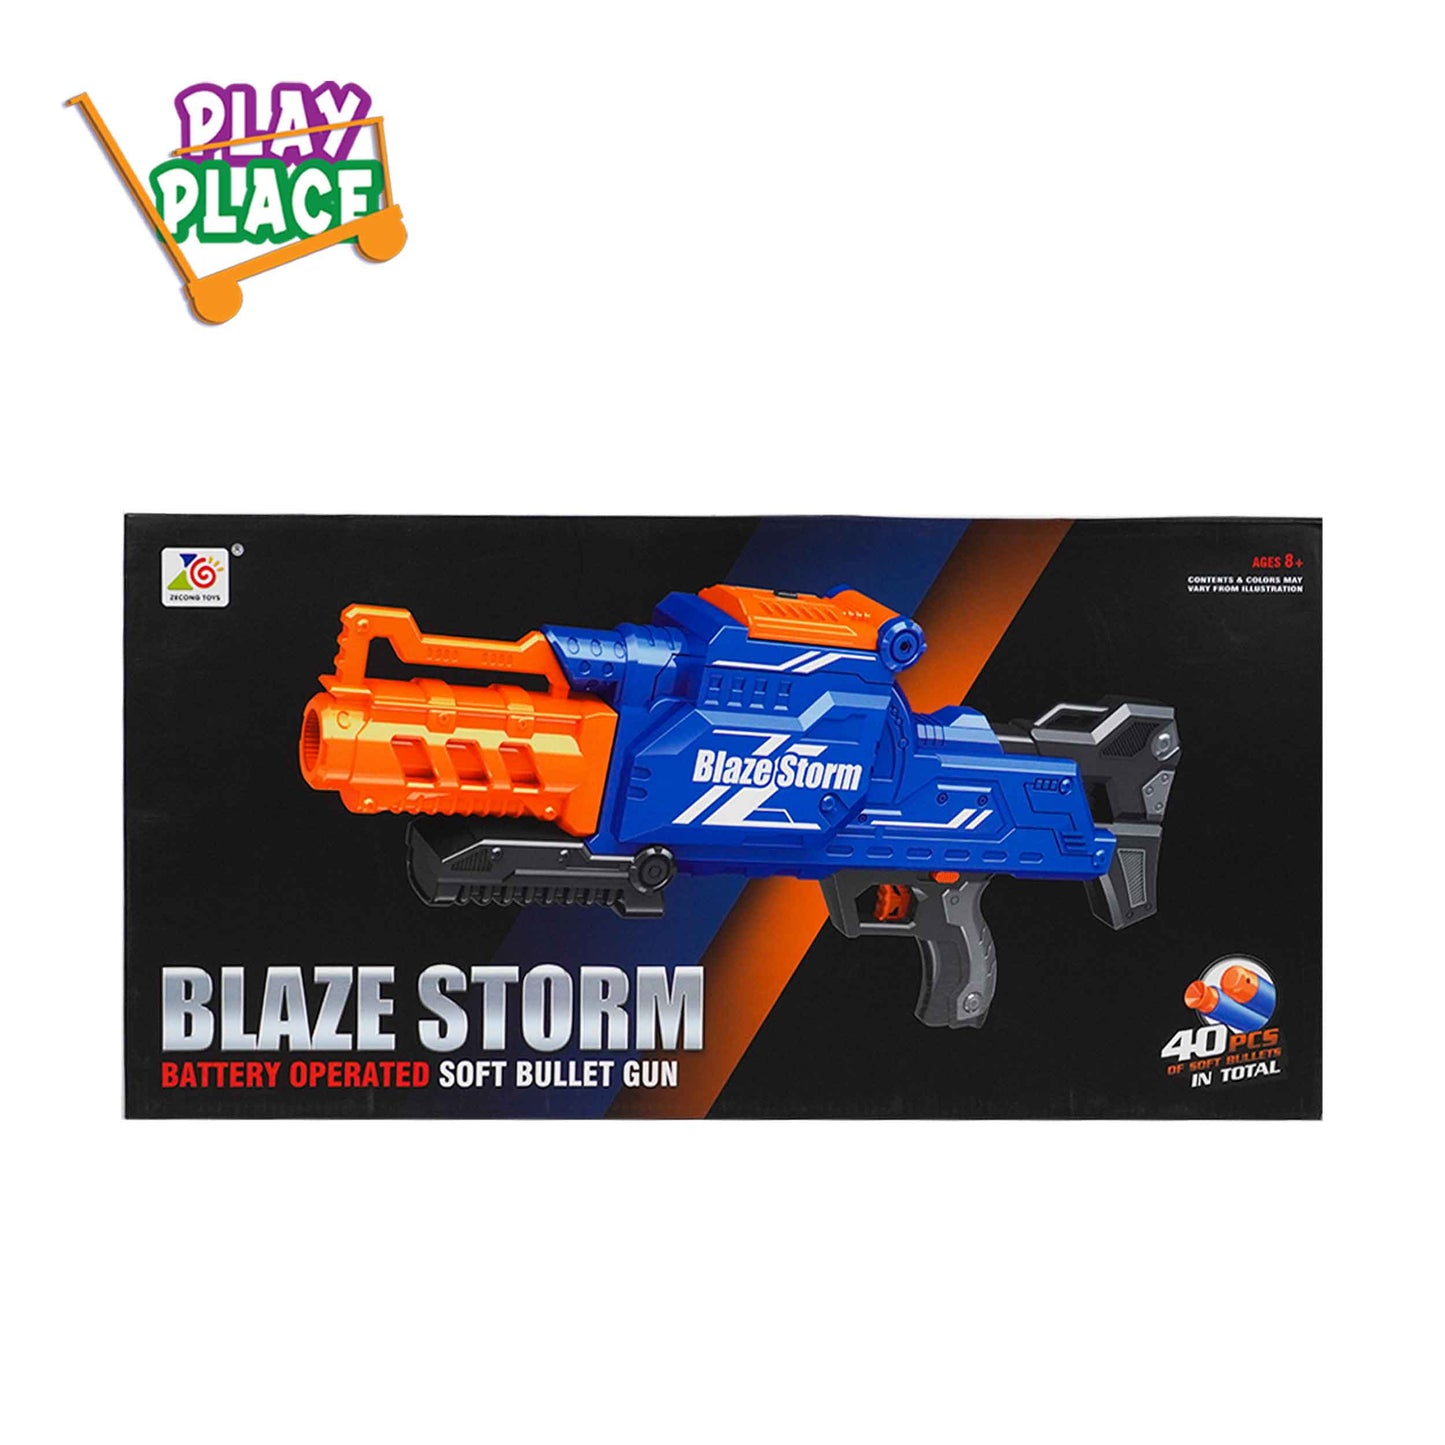 Blaze Storm Battery Operated Soft Bullet Gun